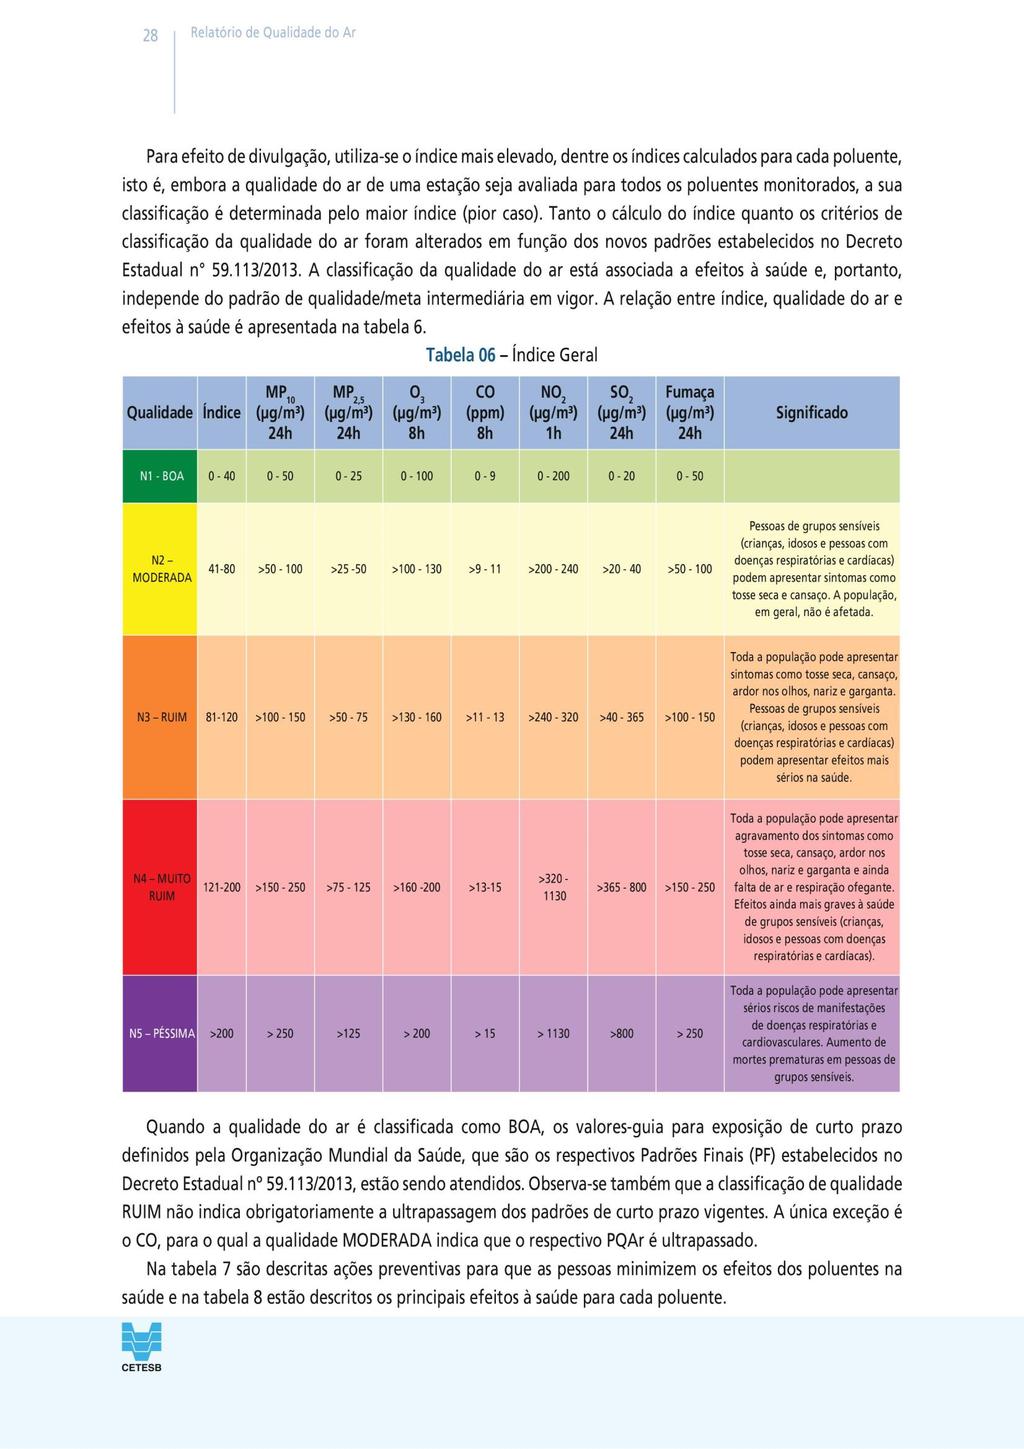 A classificação da qualidade do ar está associada a efeitos à saúde e, portanto, independe do padrão de qualidade/meta intermediária em vigor.